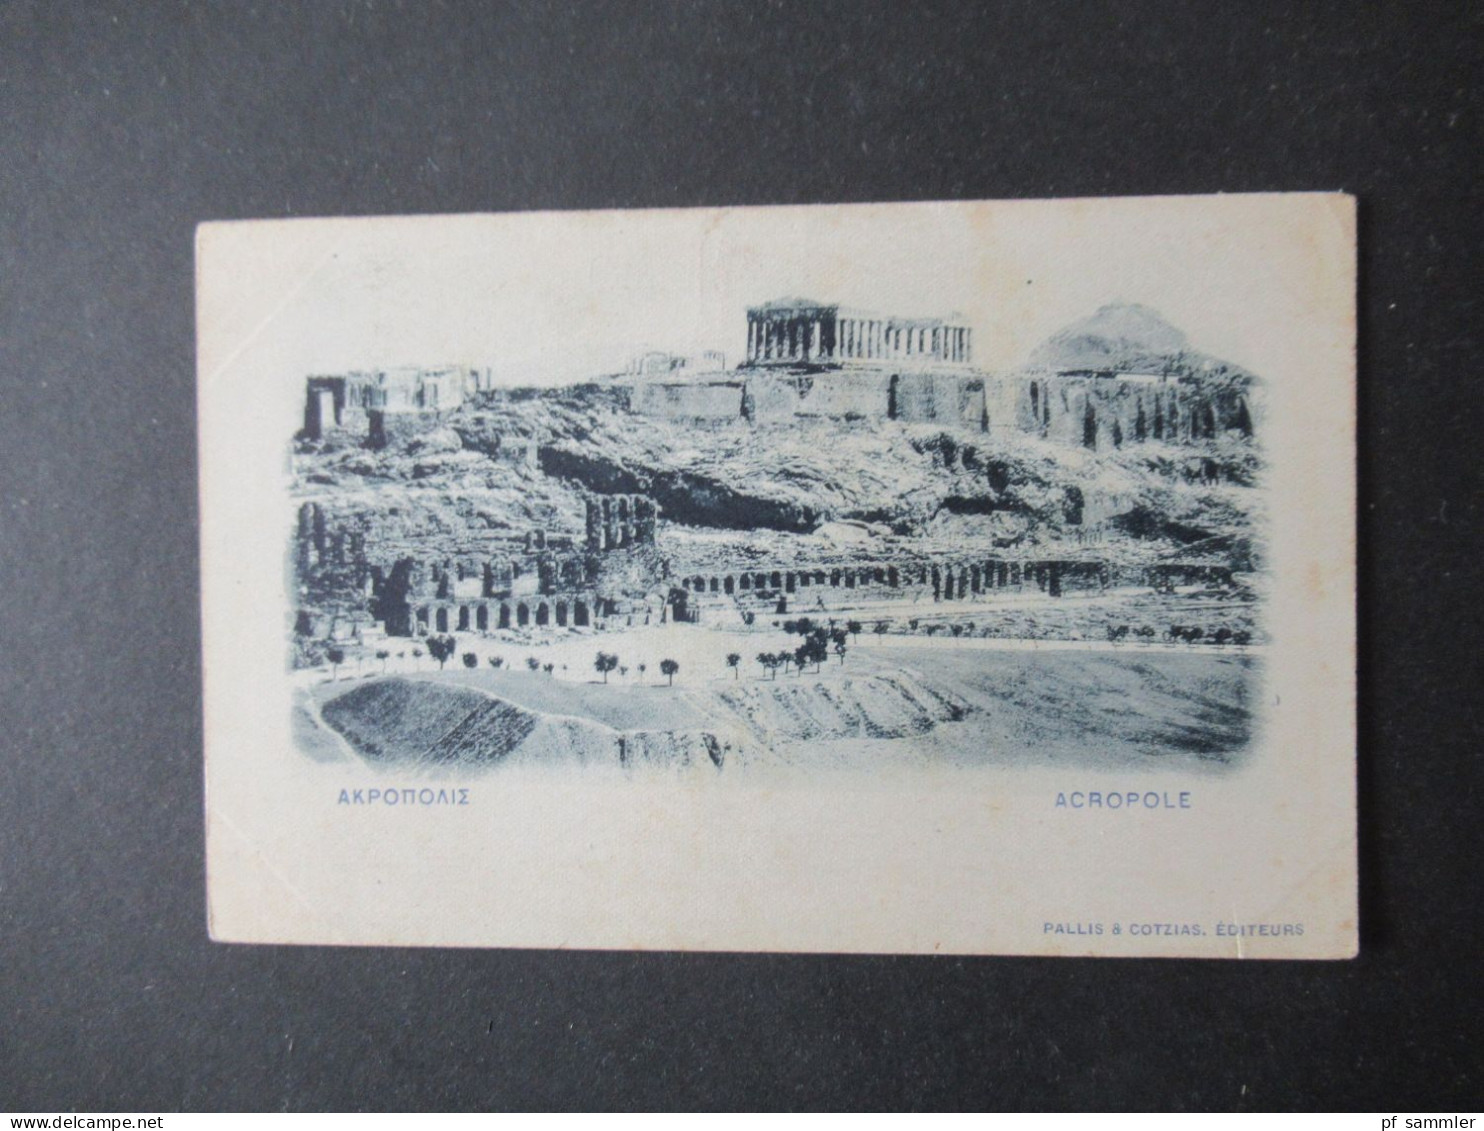 Griechenland Um 1900 Ganzsache Bild PK Carte Postale Reponse / Acropole Pallis & Cotzias Editeurs Ungebraucht! - Entiers Postaux